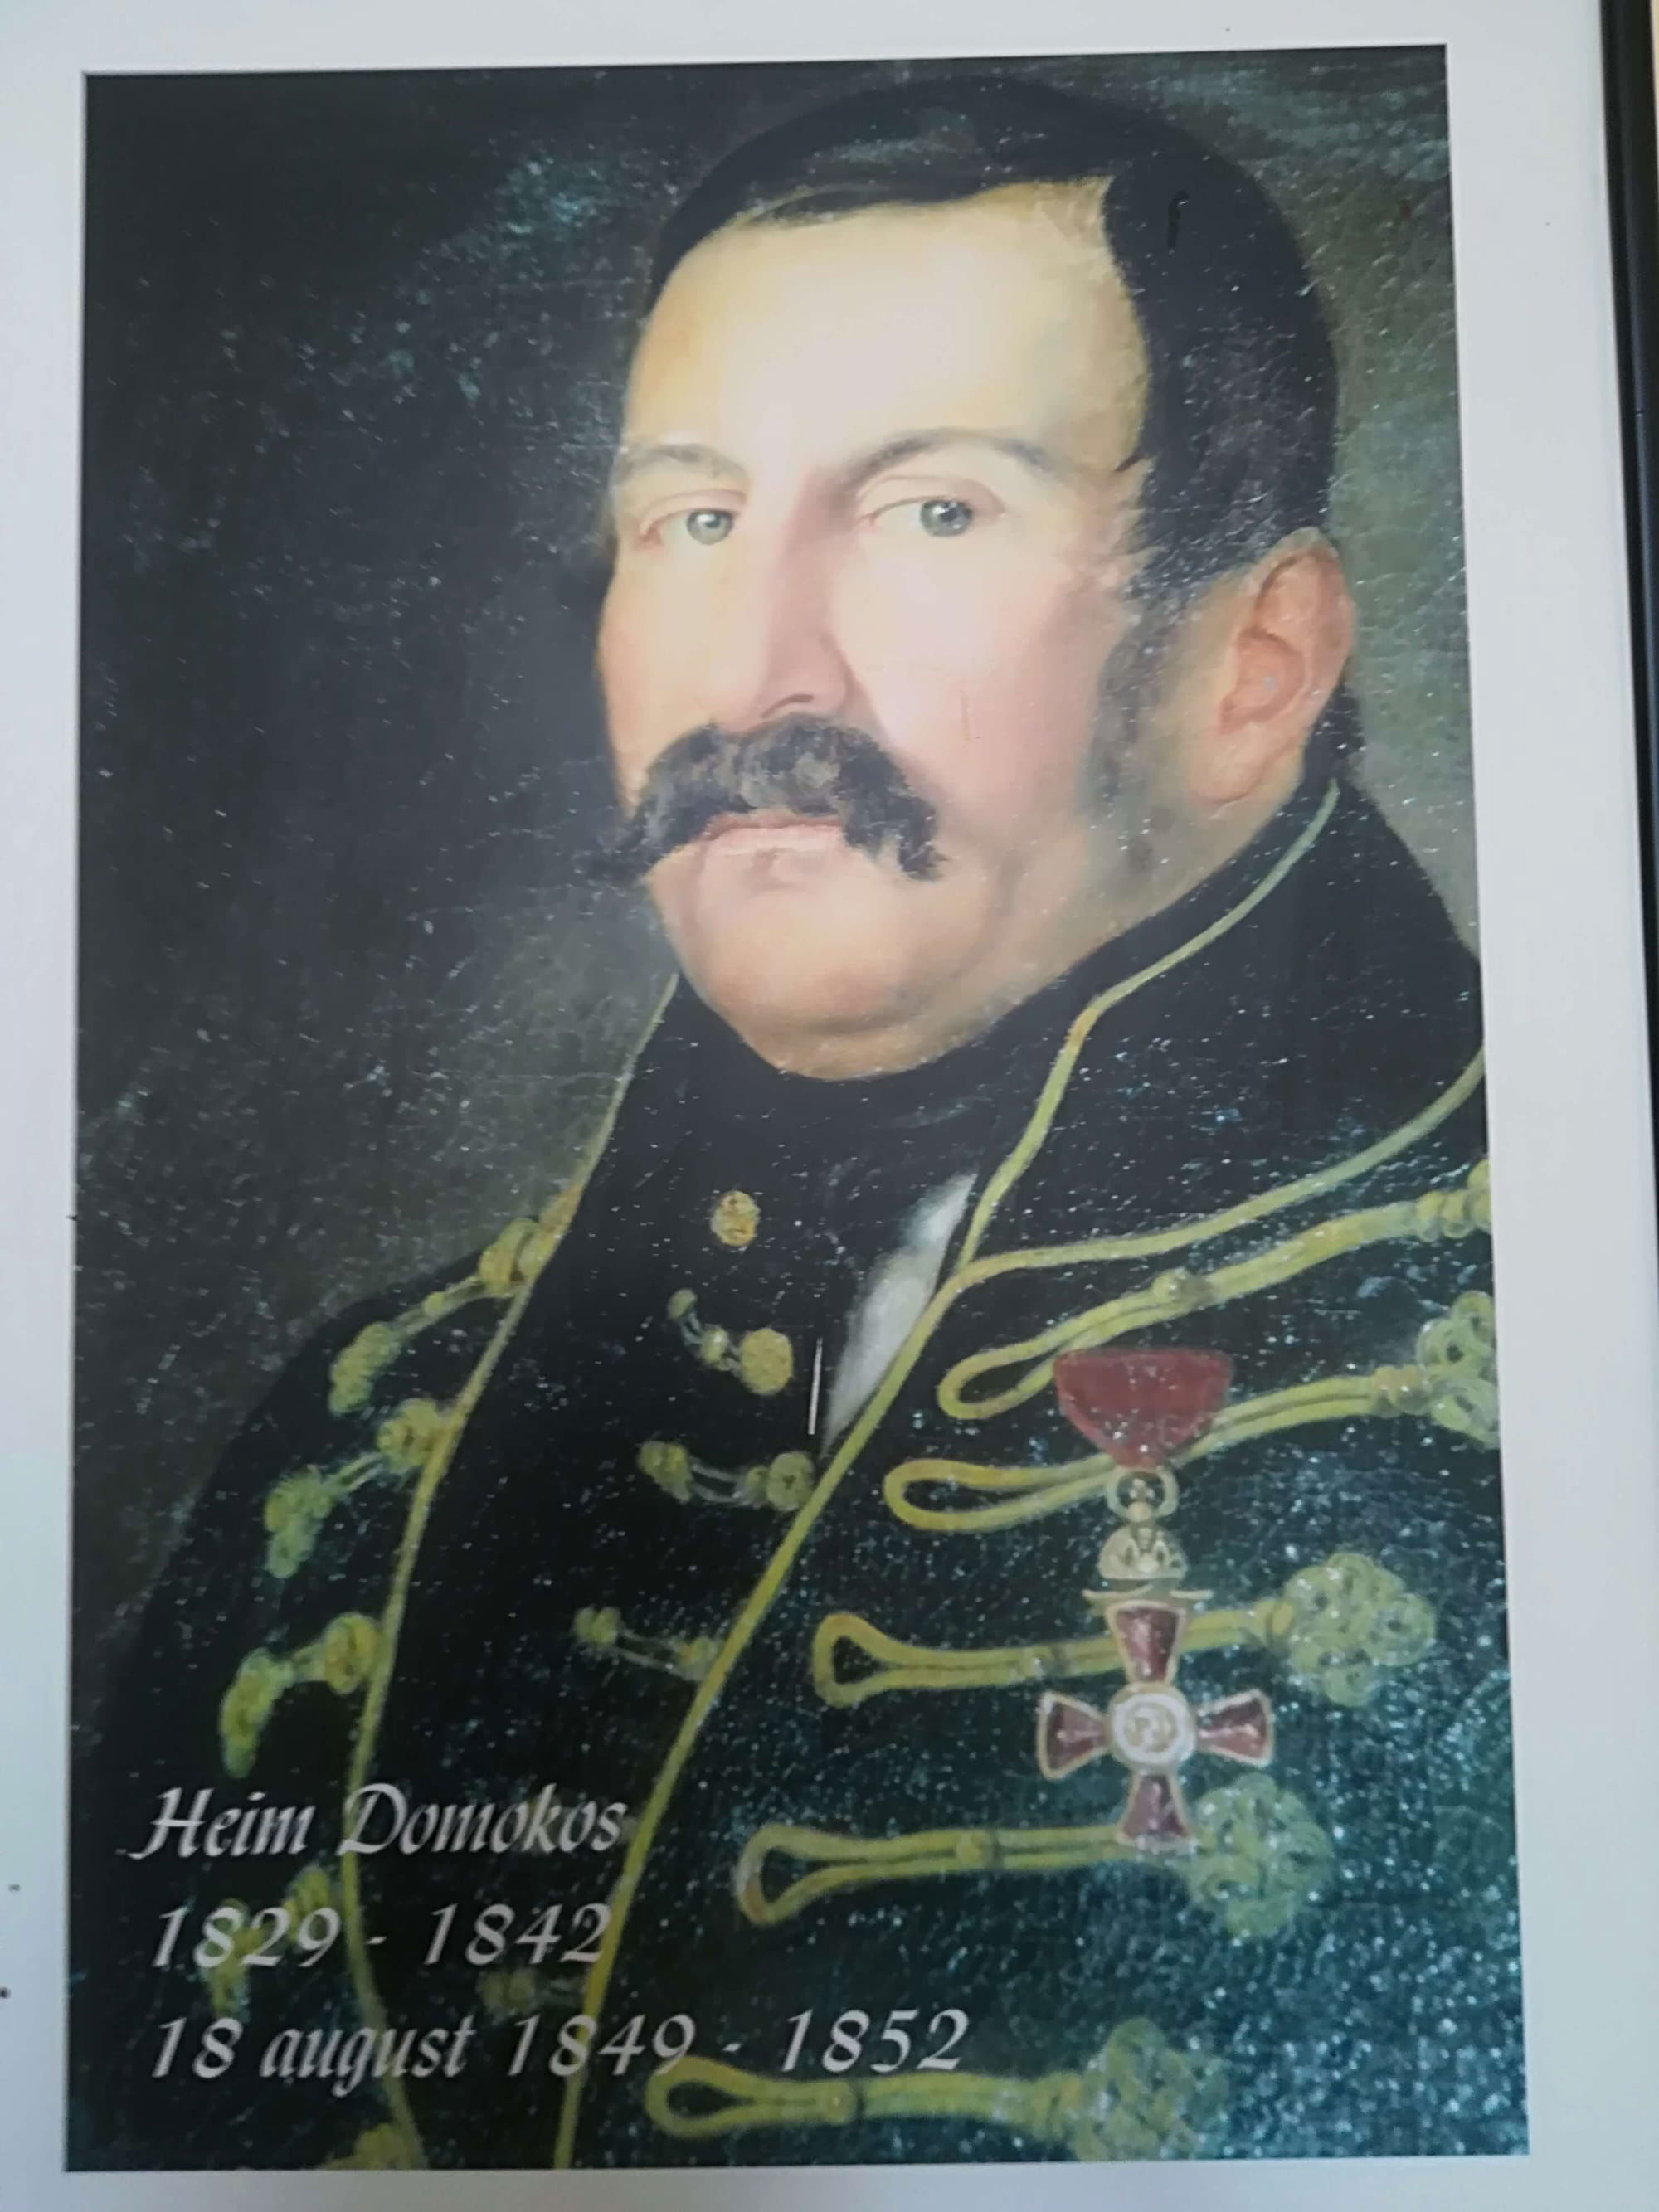 Heim Domokos - primar 1829-1842 și 1849-1852